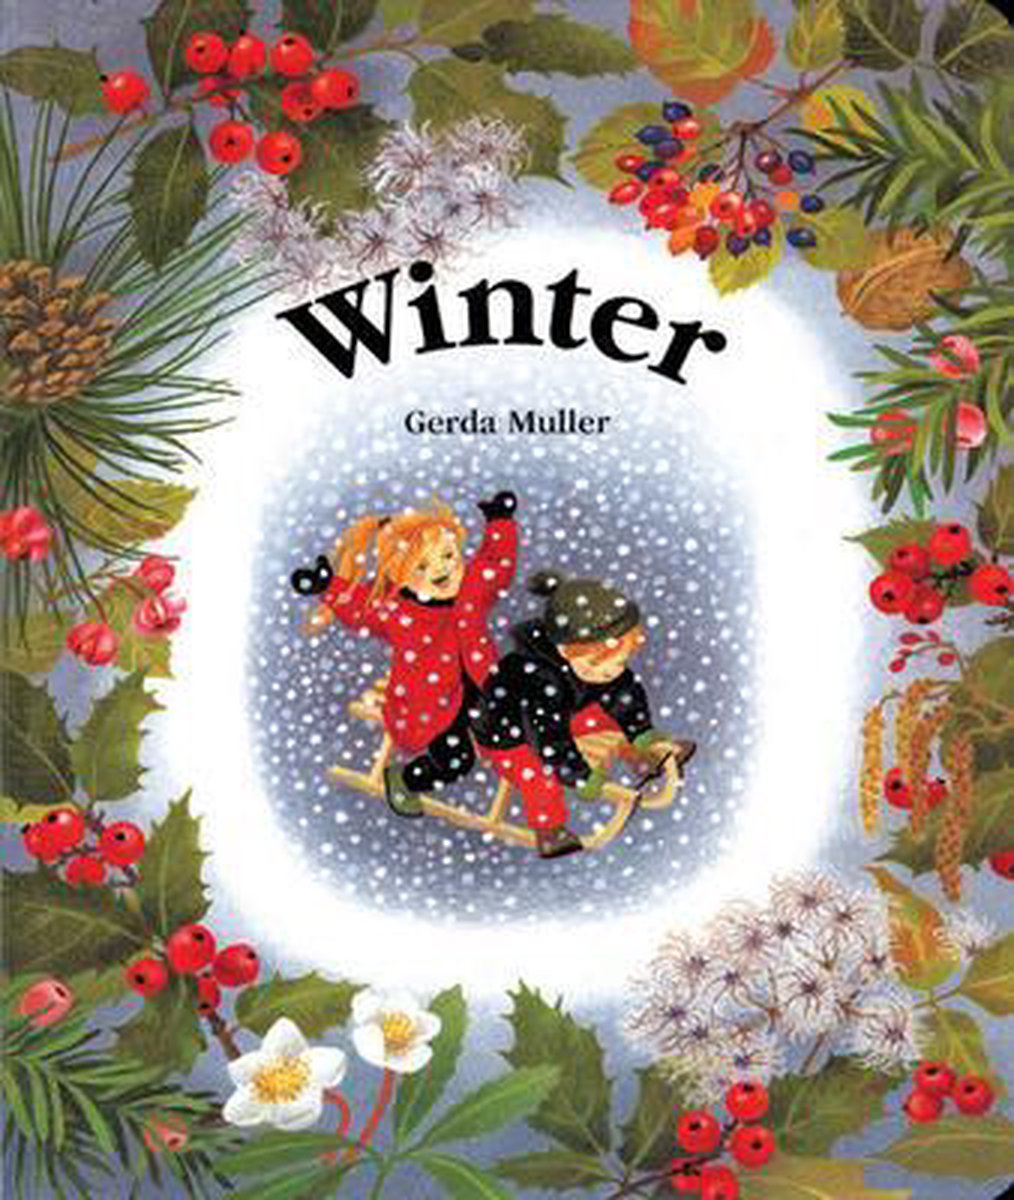 Winter - Gerda Muller